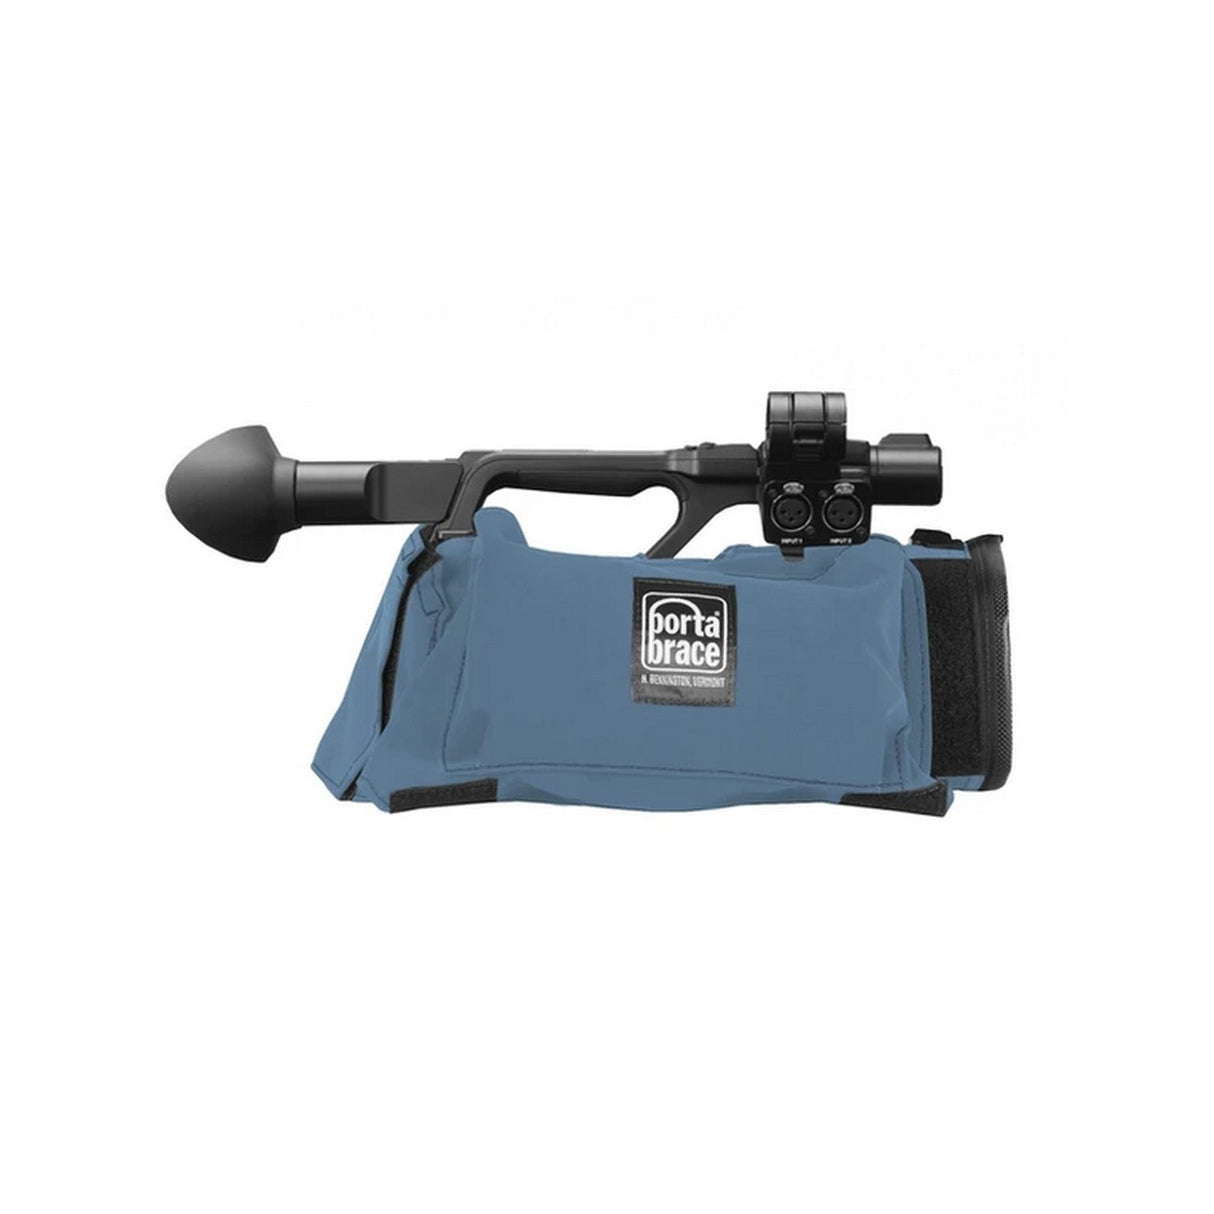 PortaBrace CBA-PXWZ280 Camera Body Armor Case for Sony PXW-Z280, Blue